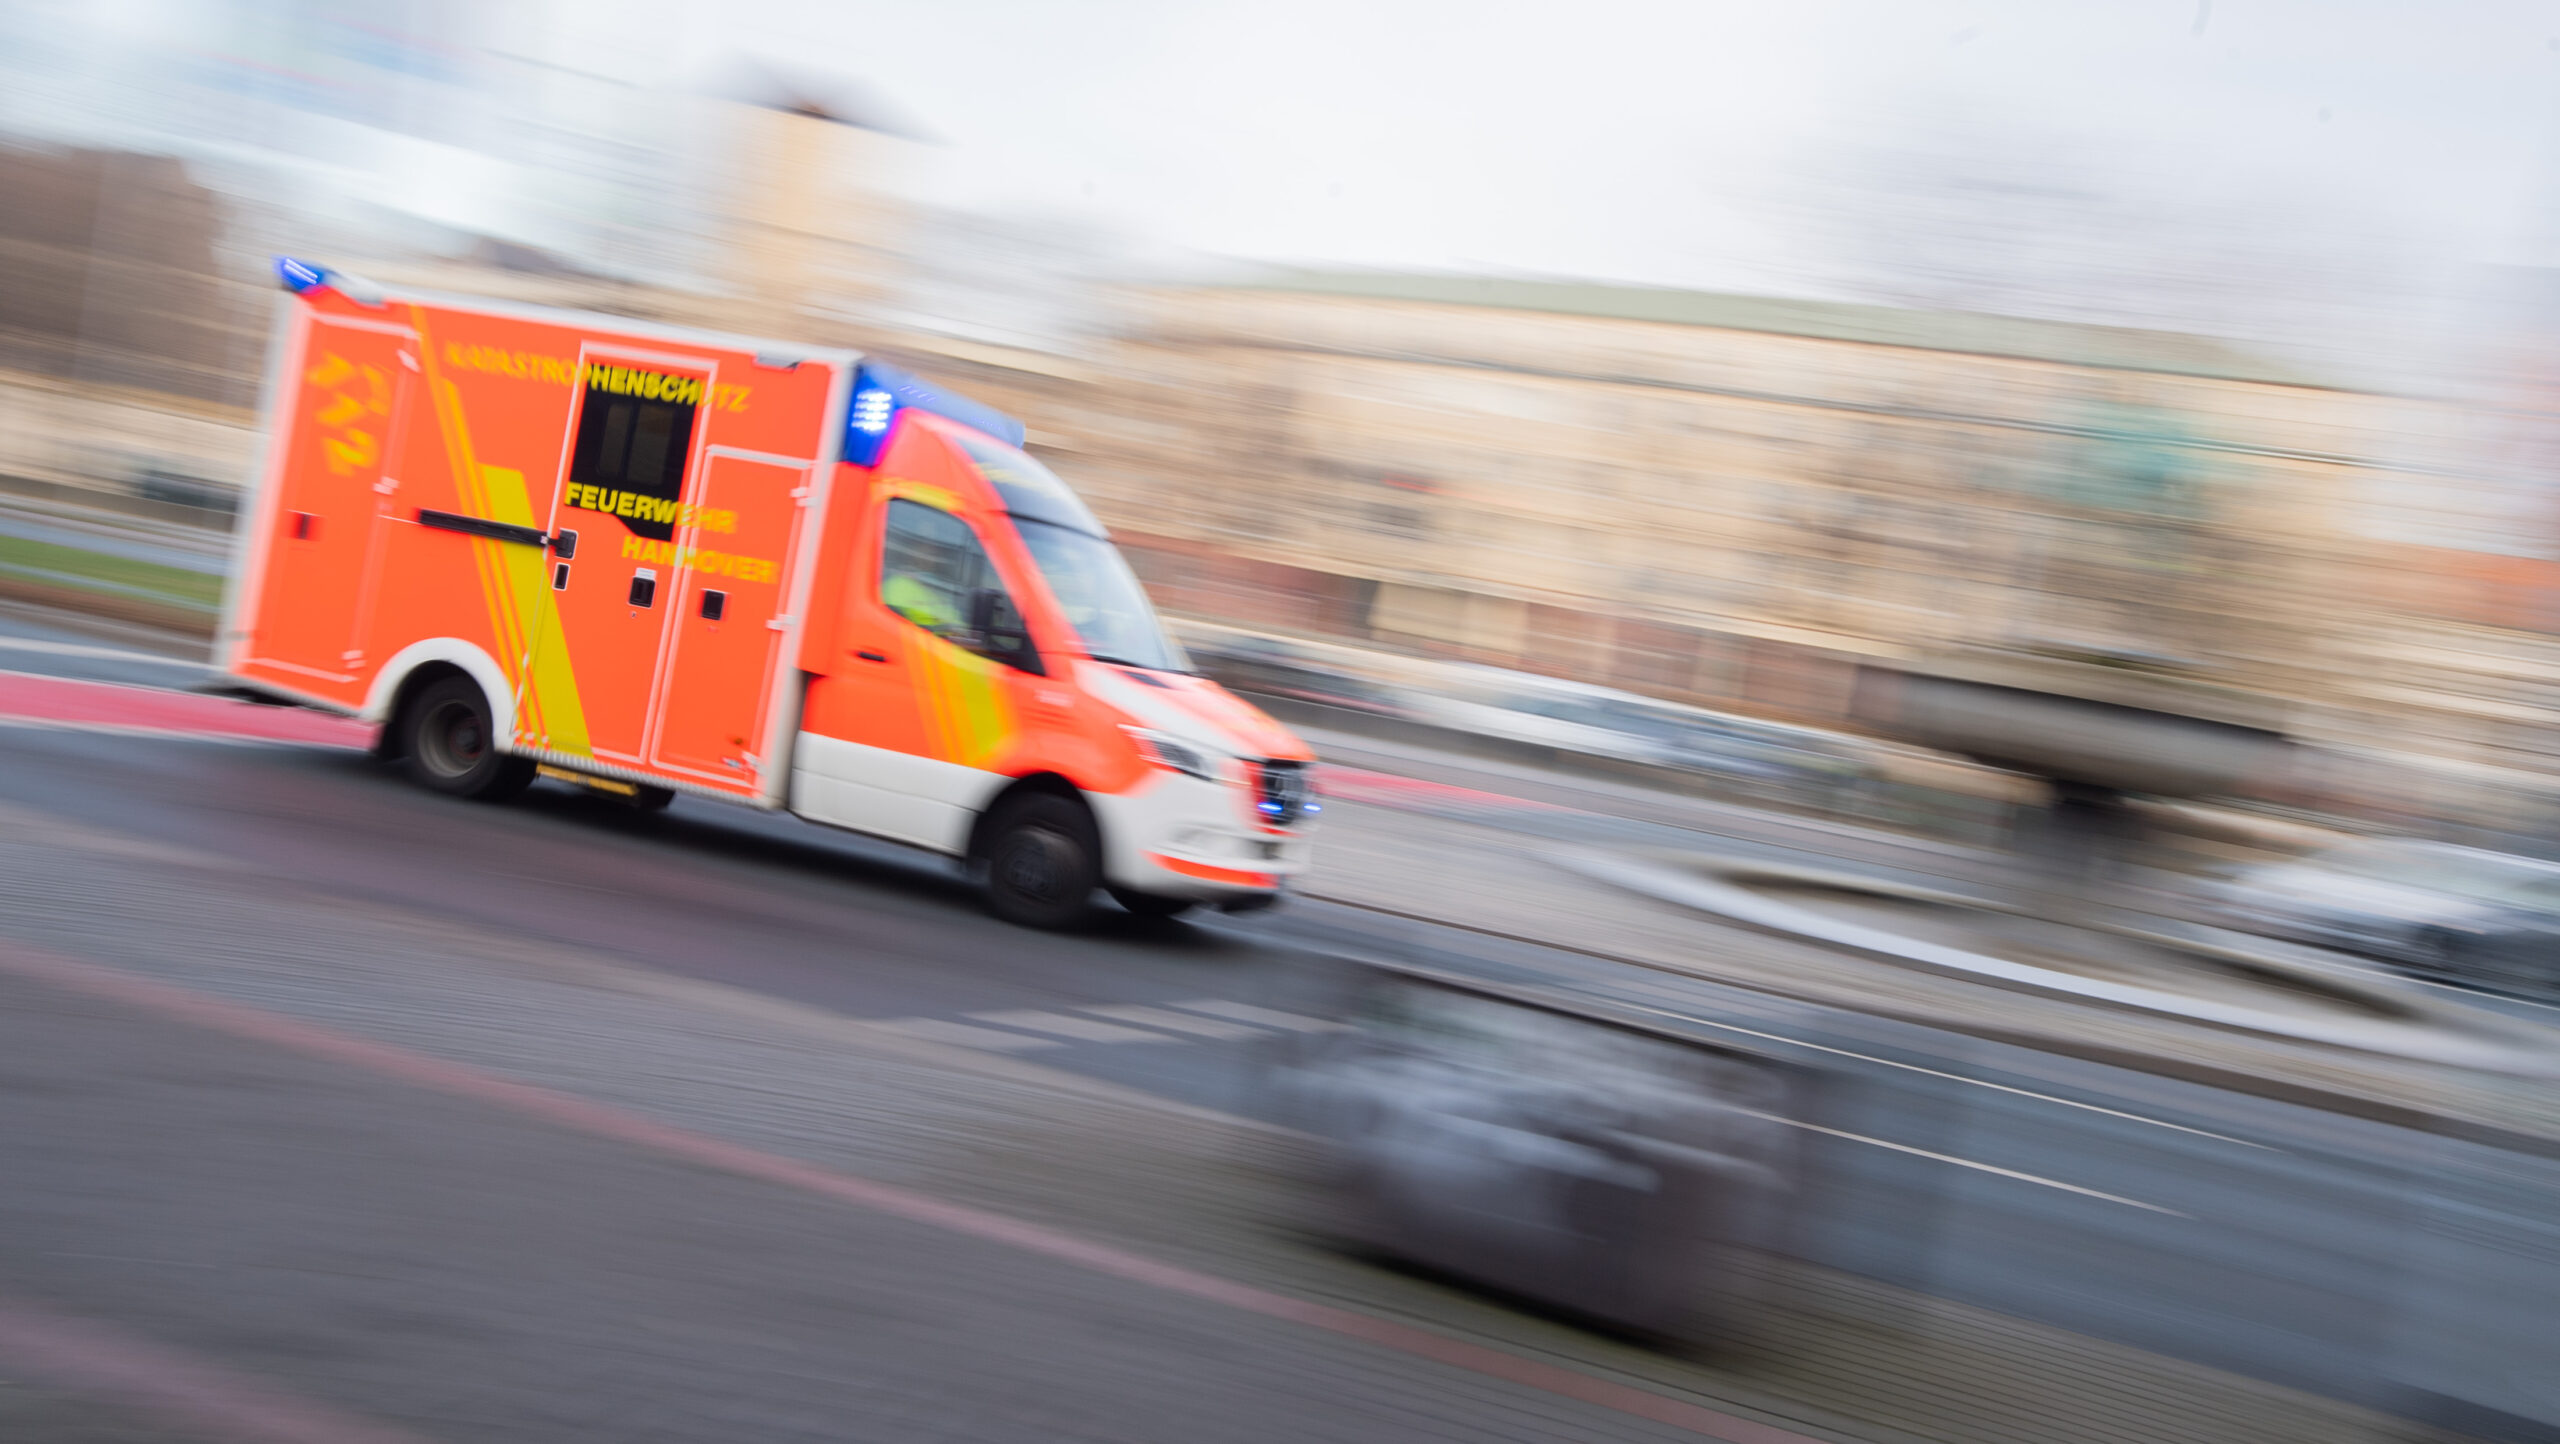 Ein Krankenwagen in Fahrt als Symbolfoto